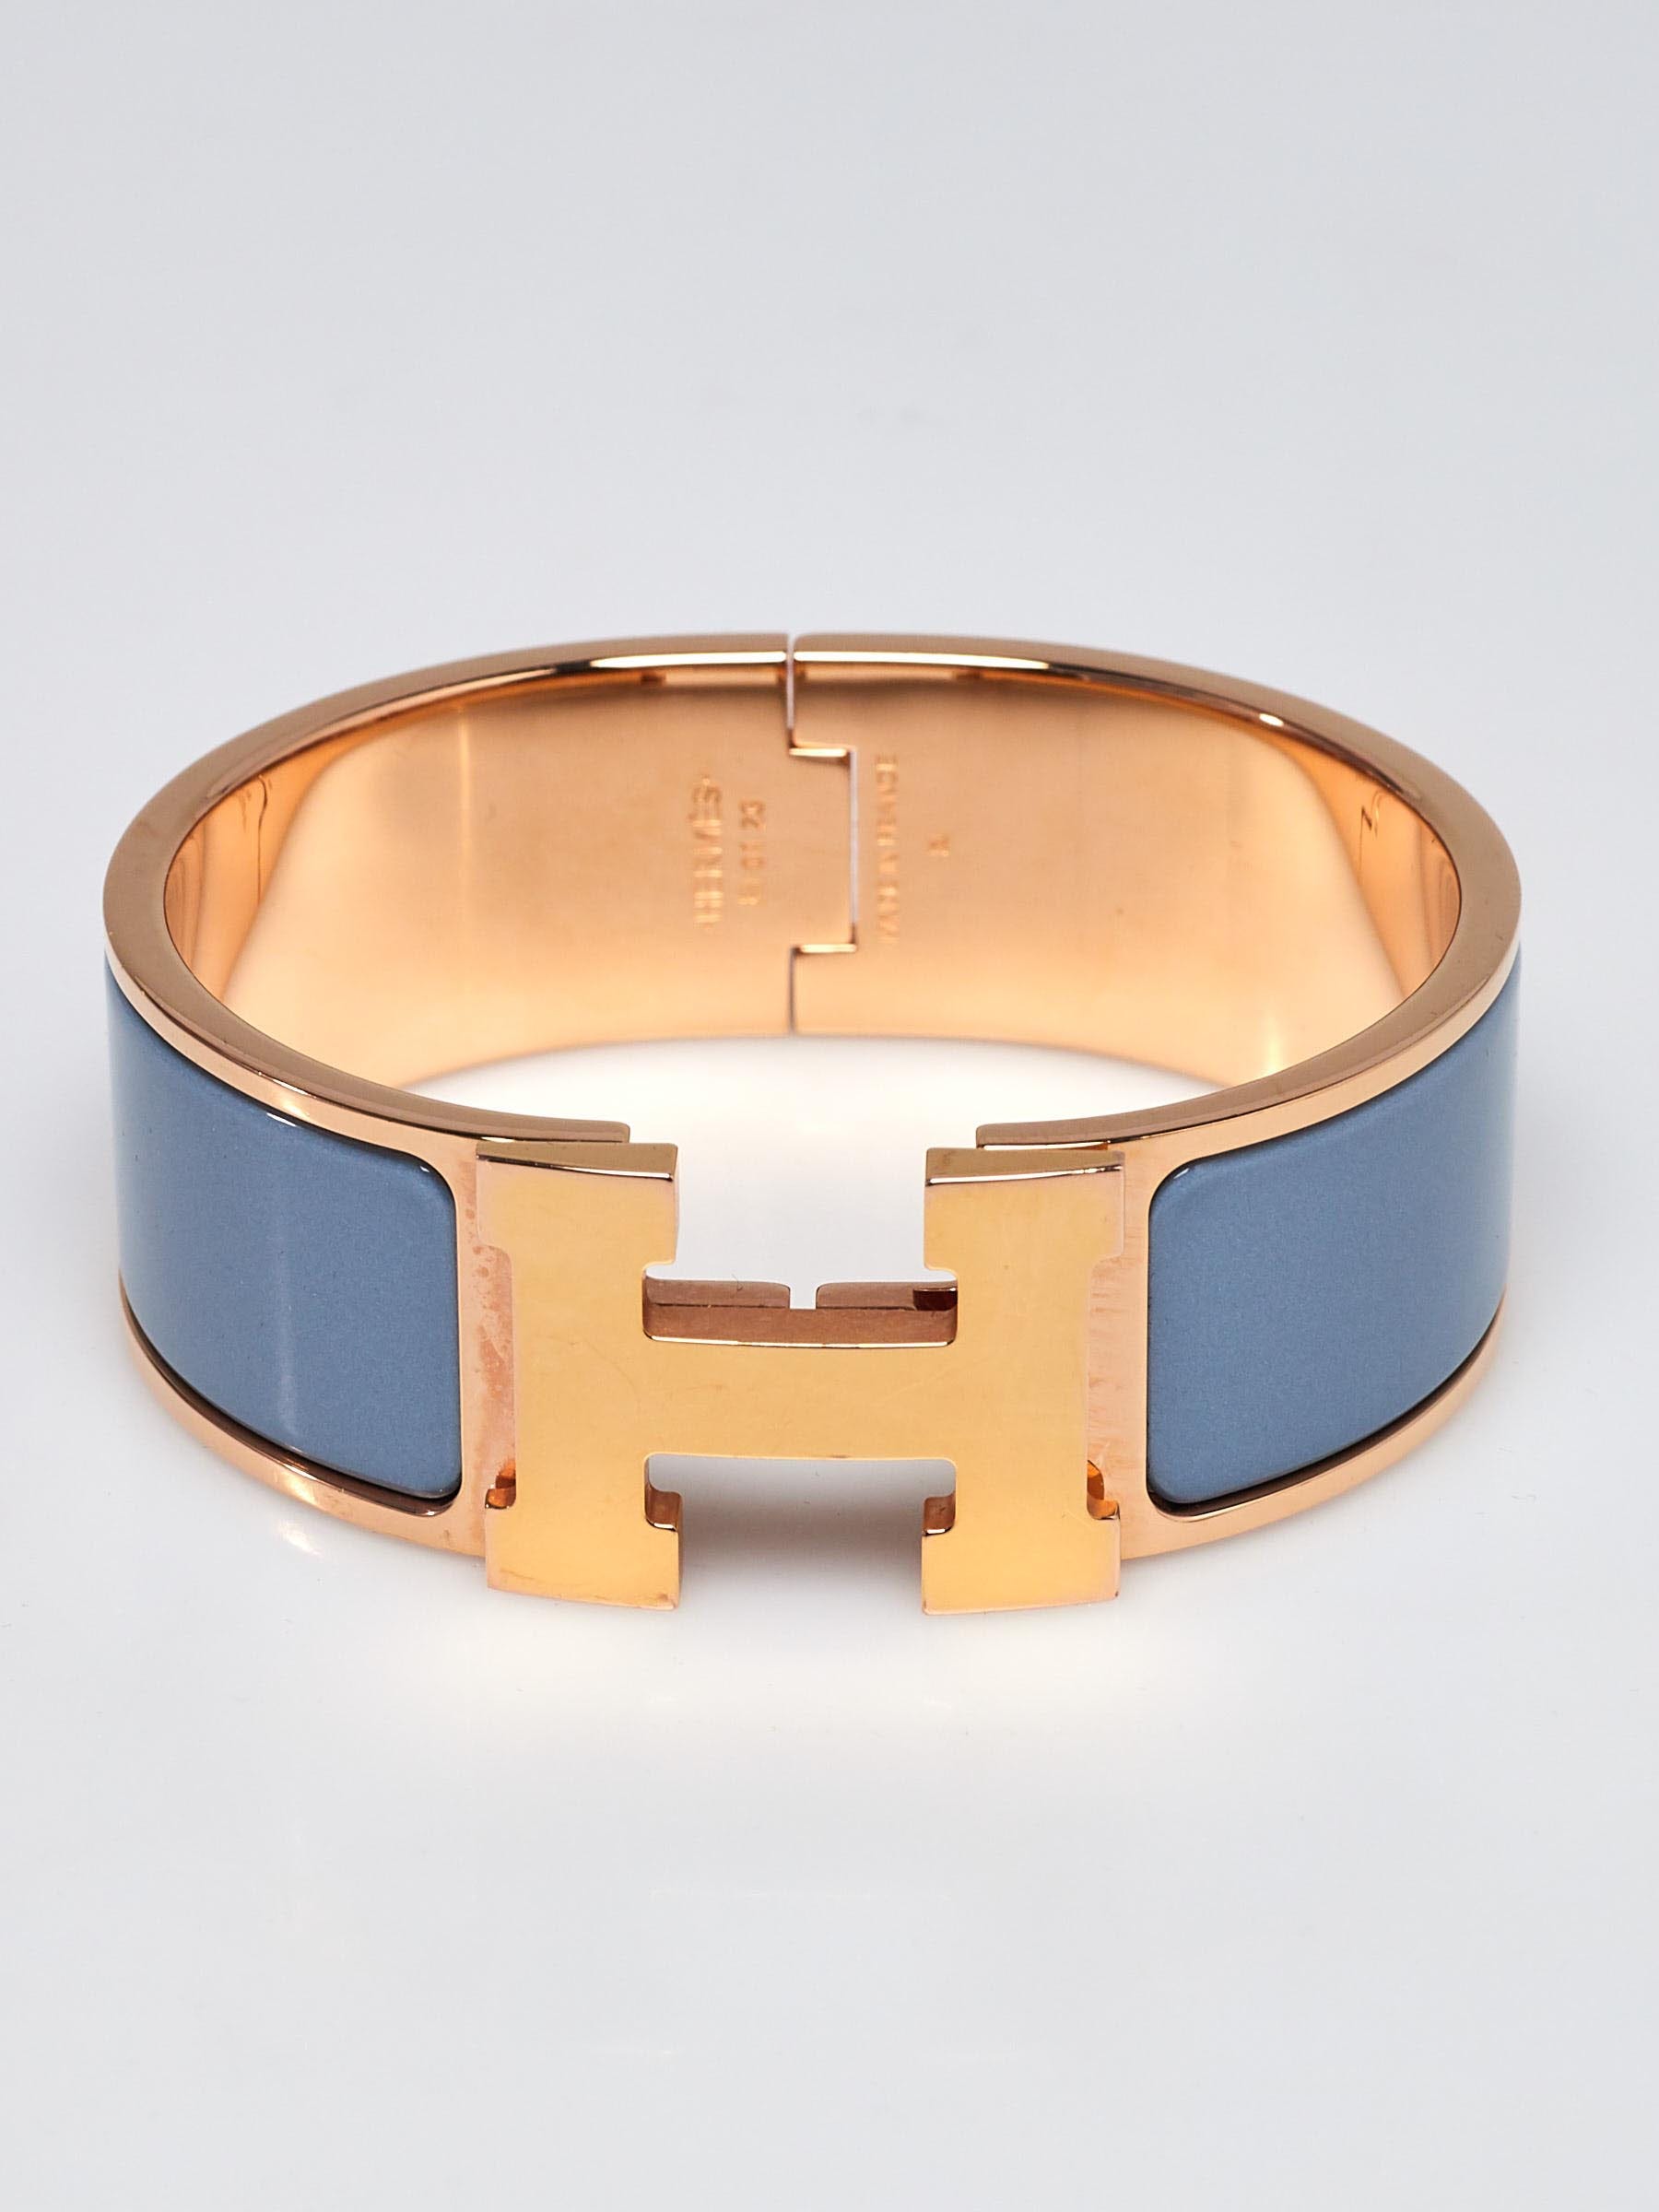 Hermes Clic H Blue Enamel Bracelet